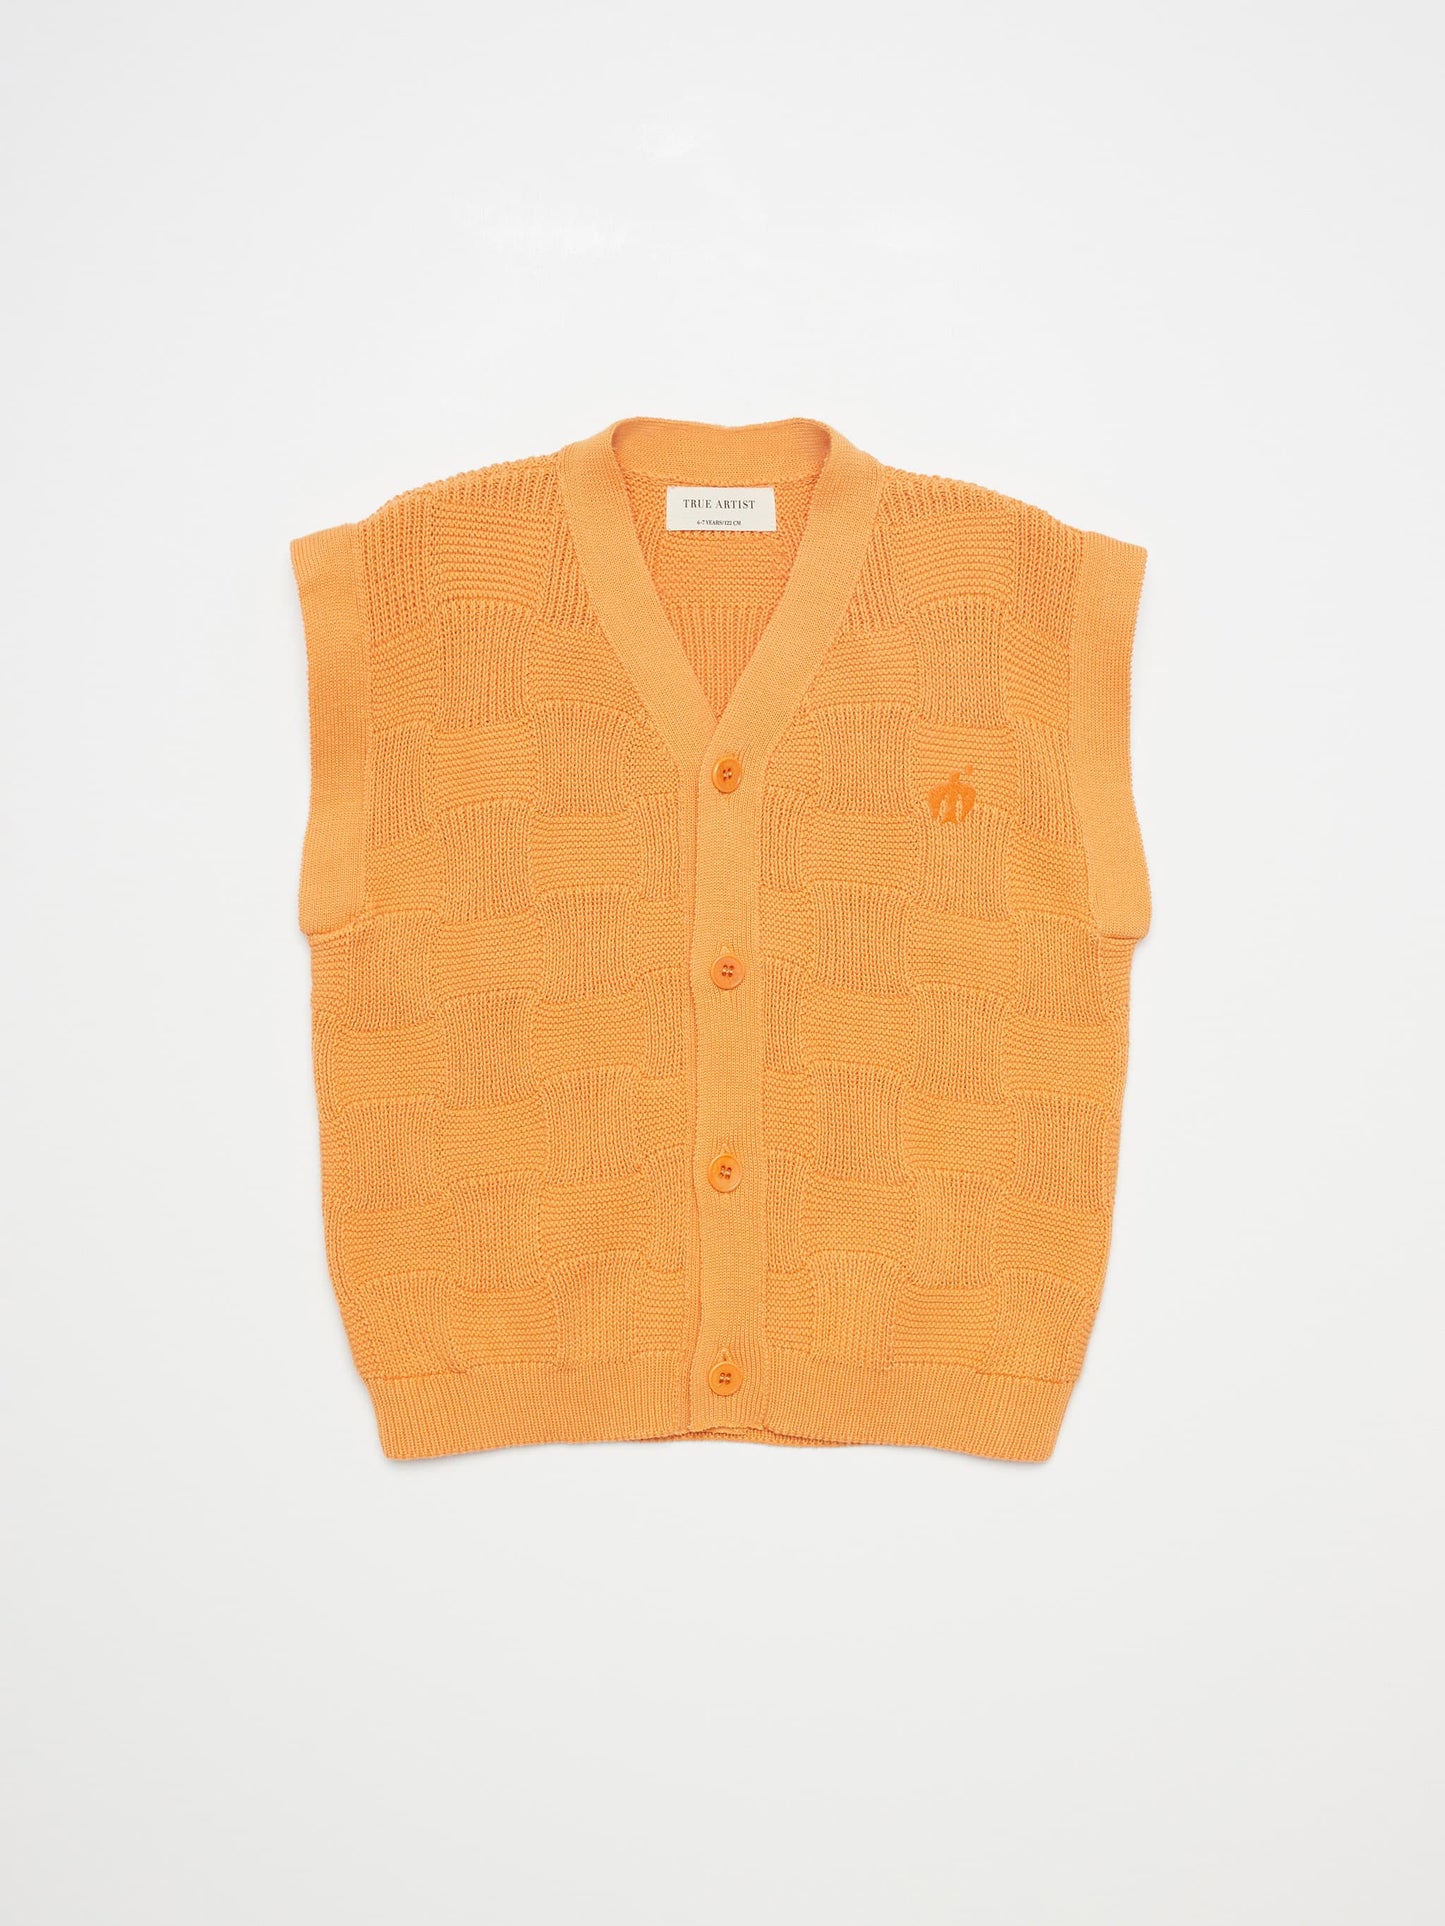 Vest nº02 Orange Melon